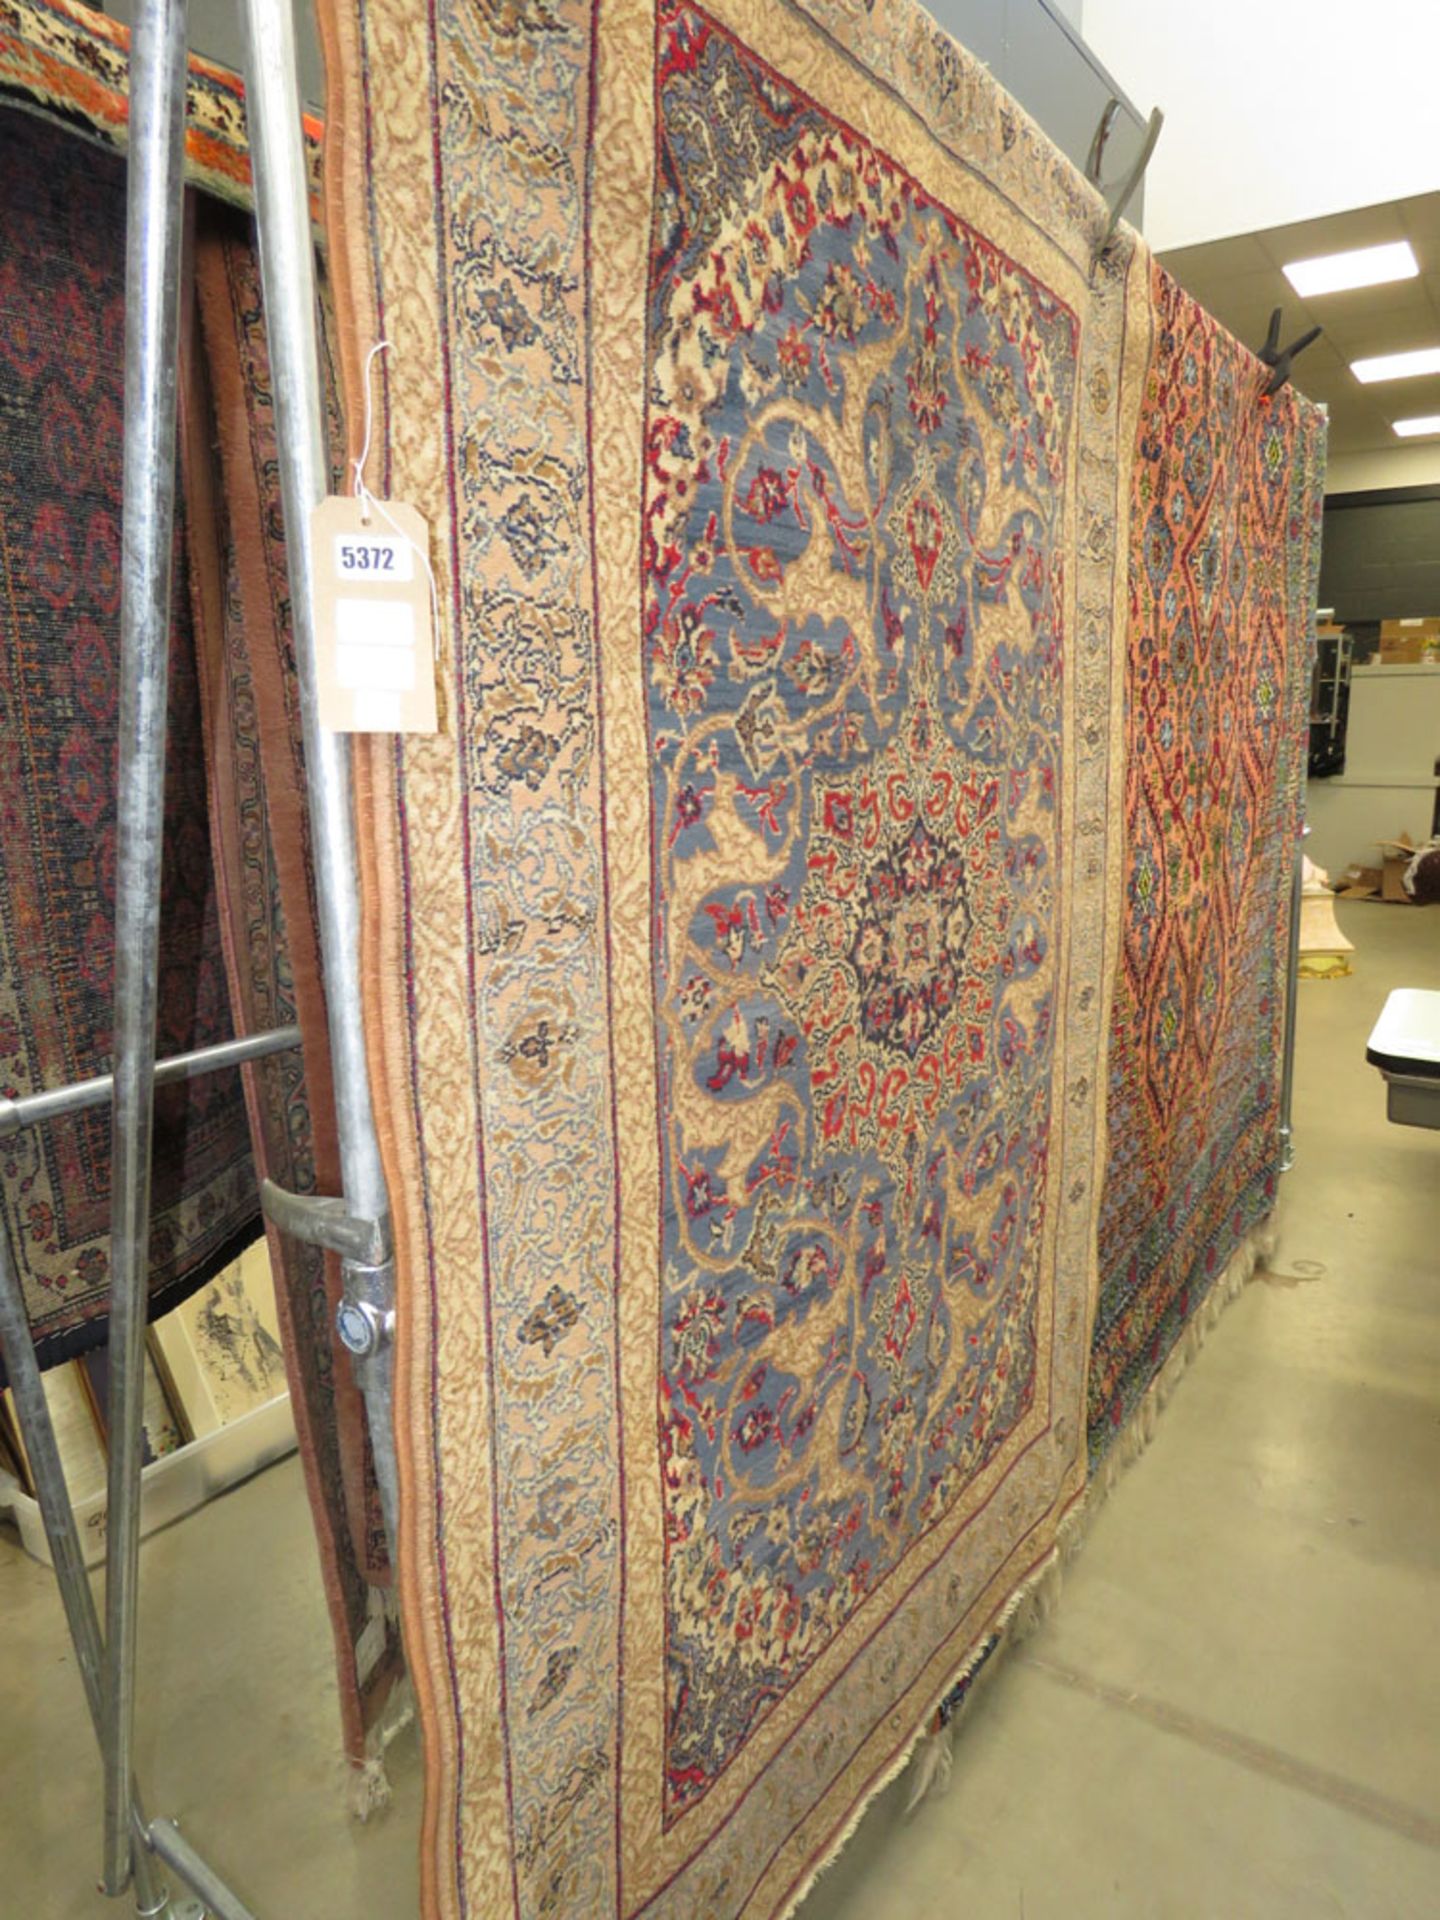 (9) Louis De Poortere brown and blue floral carpet